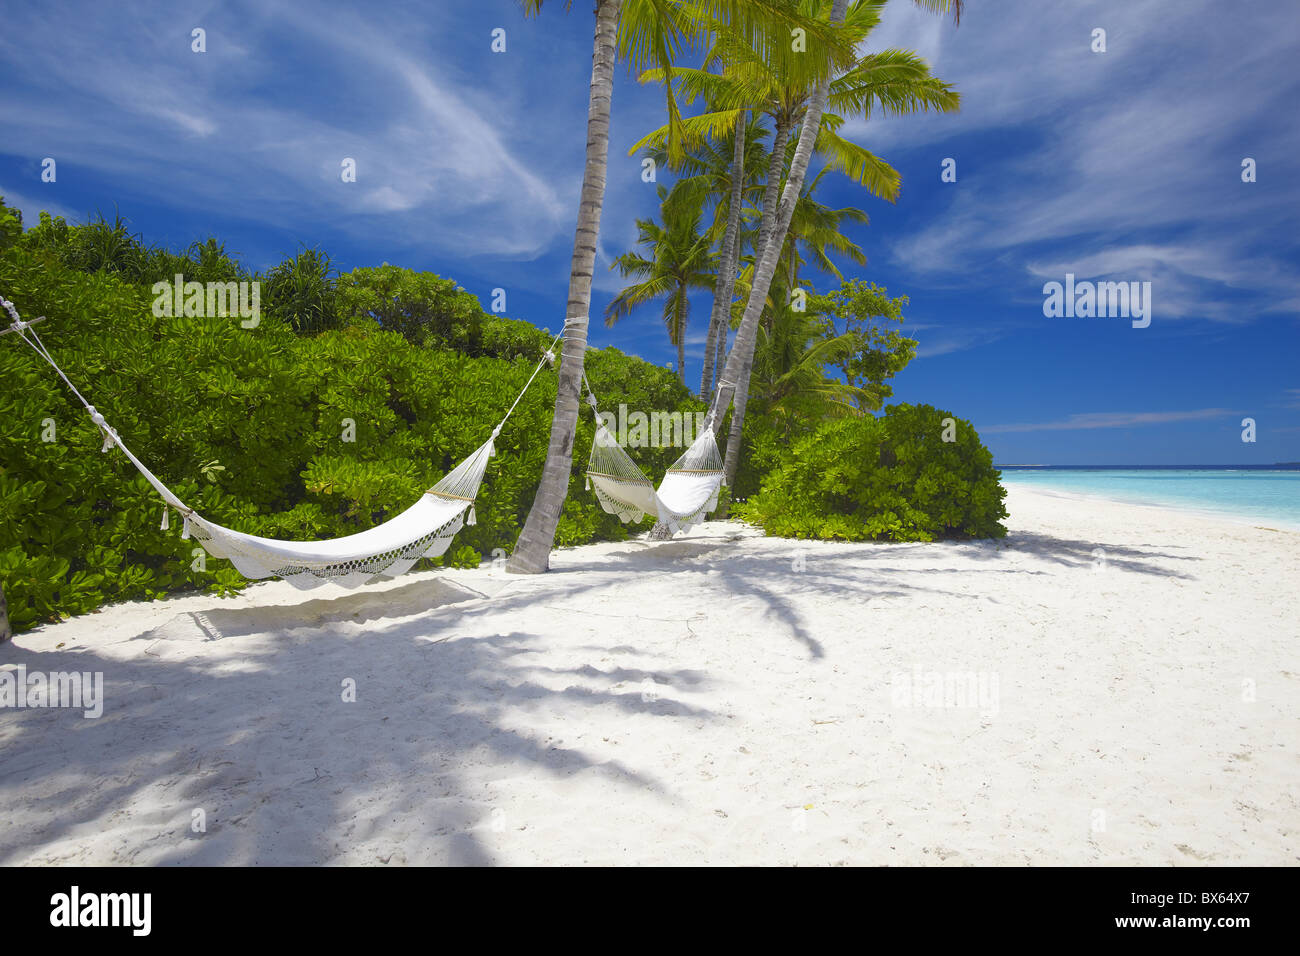 Hängematte auf leeren tropischen Strand, Malediven, Indischer Ozean, Asien Stockfoto